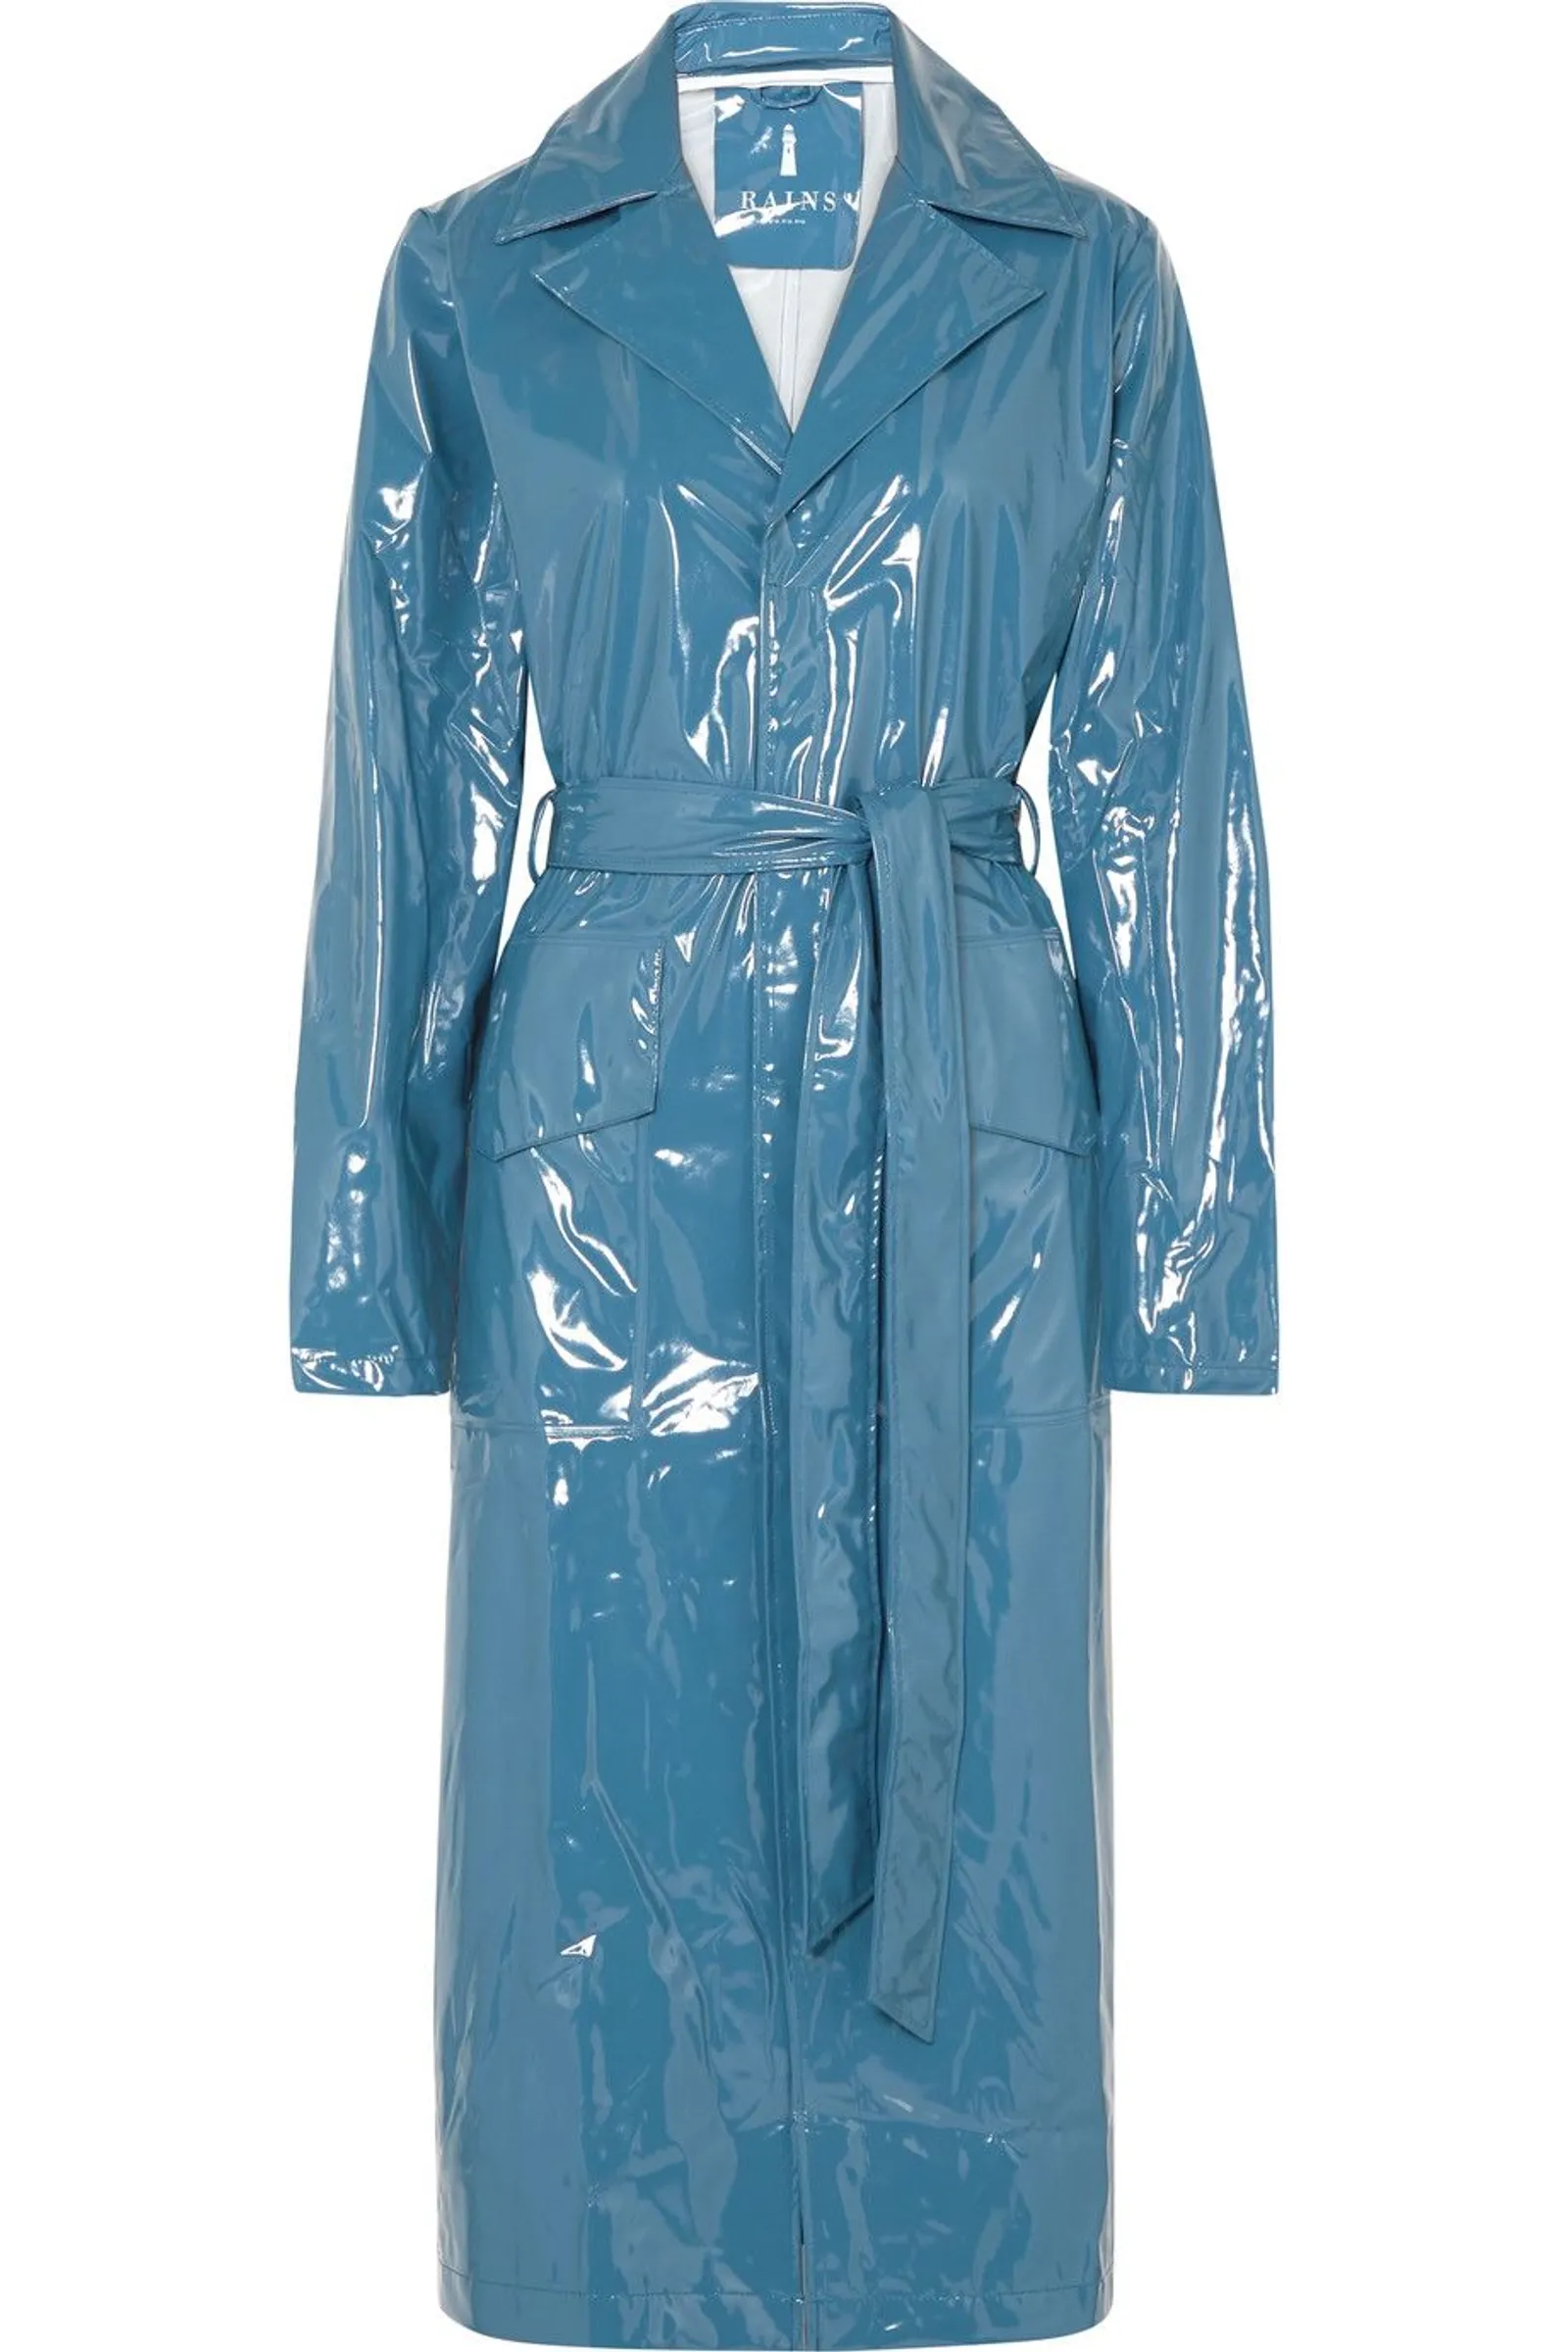 #PopbelaOOTD: Jaket Hujan yang Nyaman Tapi Tetap Fashionable